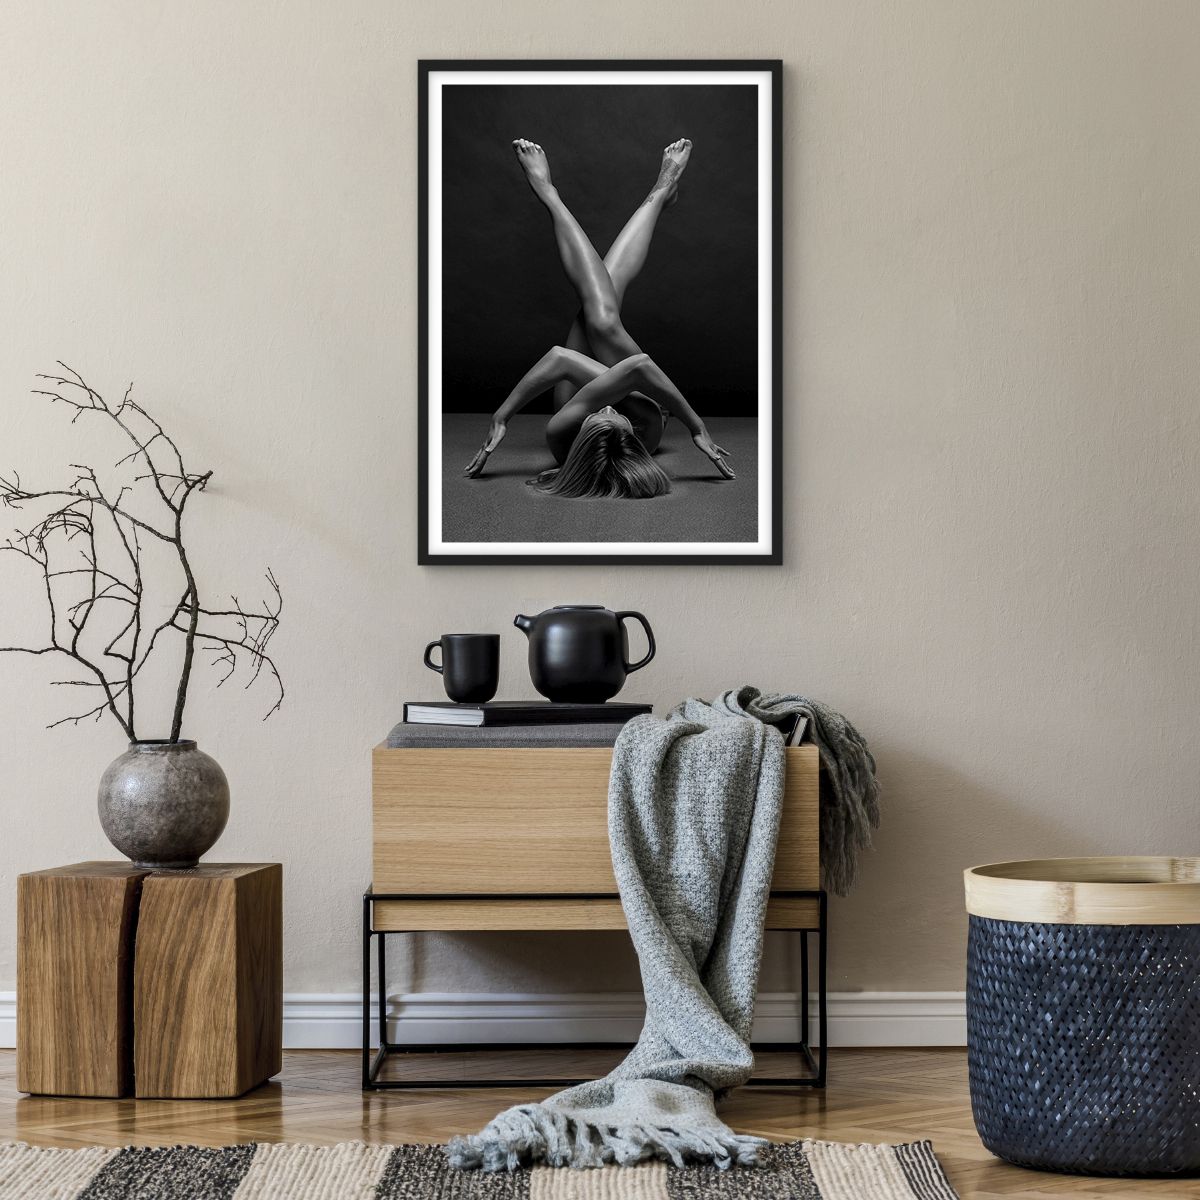 Poster in einem schwarzem Rahmen Frau, Poster in einem schwarzem Rahmen Kunst, Poster in einem schwarzem Rahmen Körper, Poster in einem schwarzem Rahmen Yoga, Poster in einem schwarzem Rahmen Gesetz